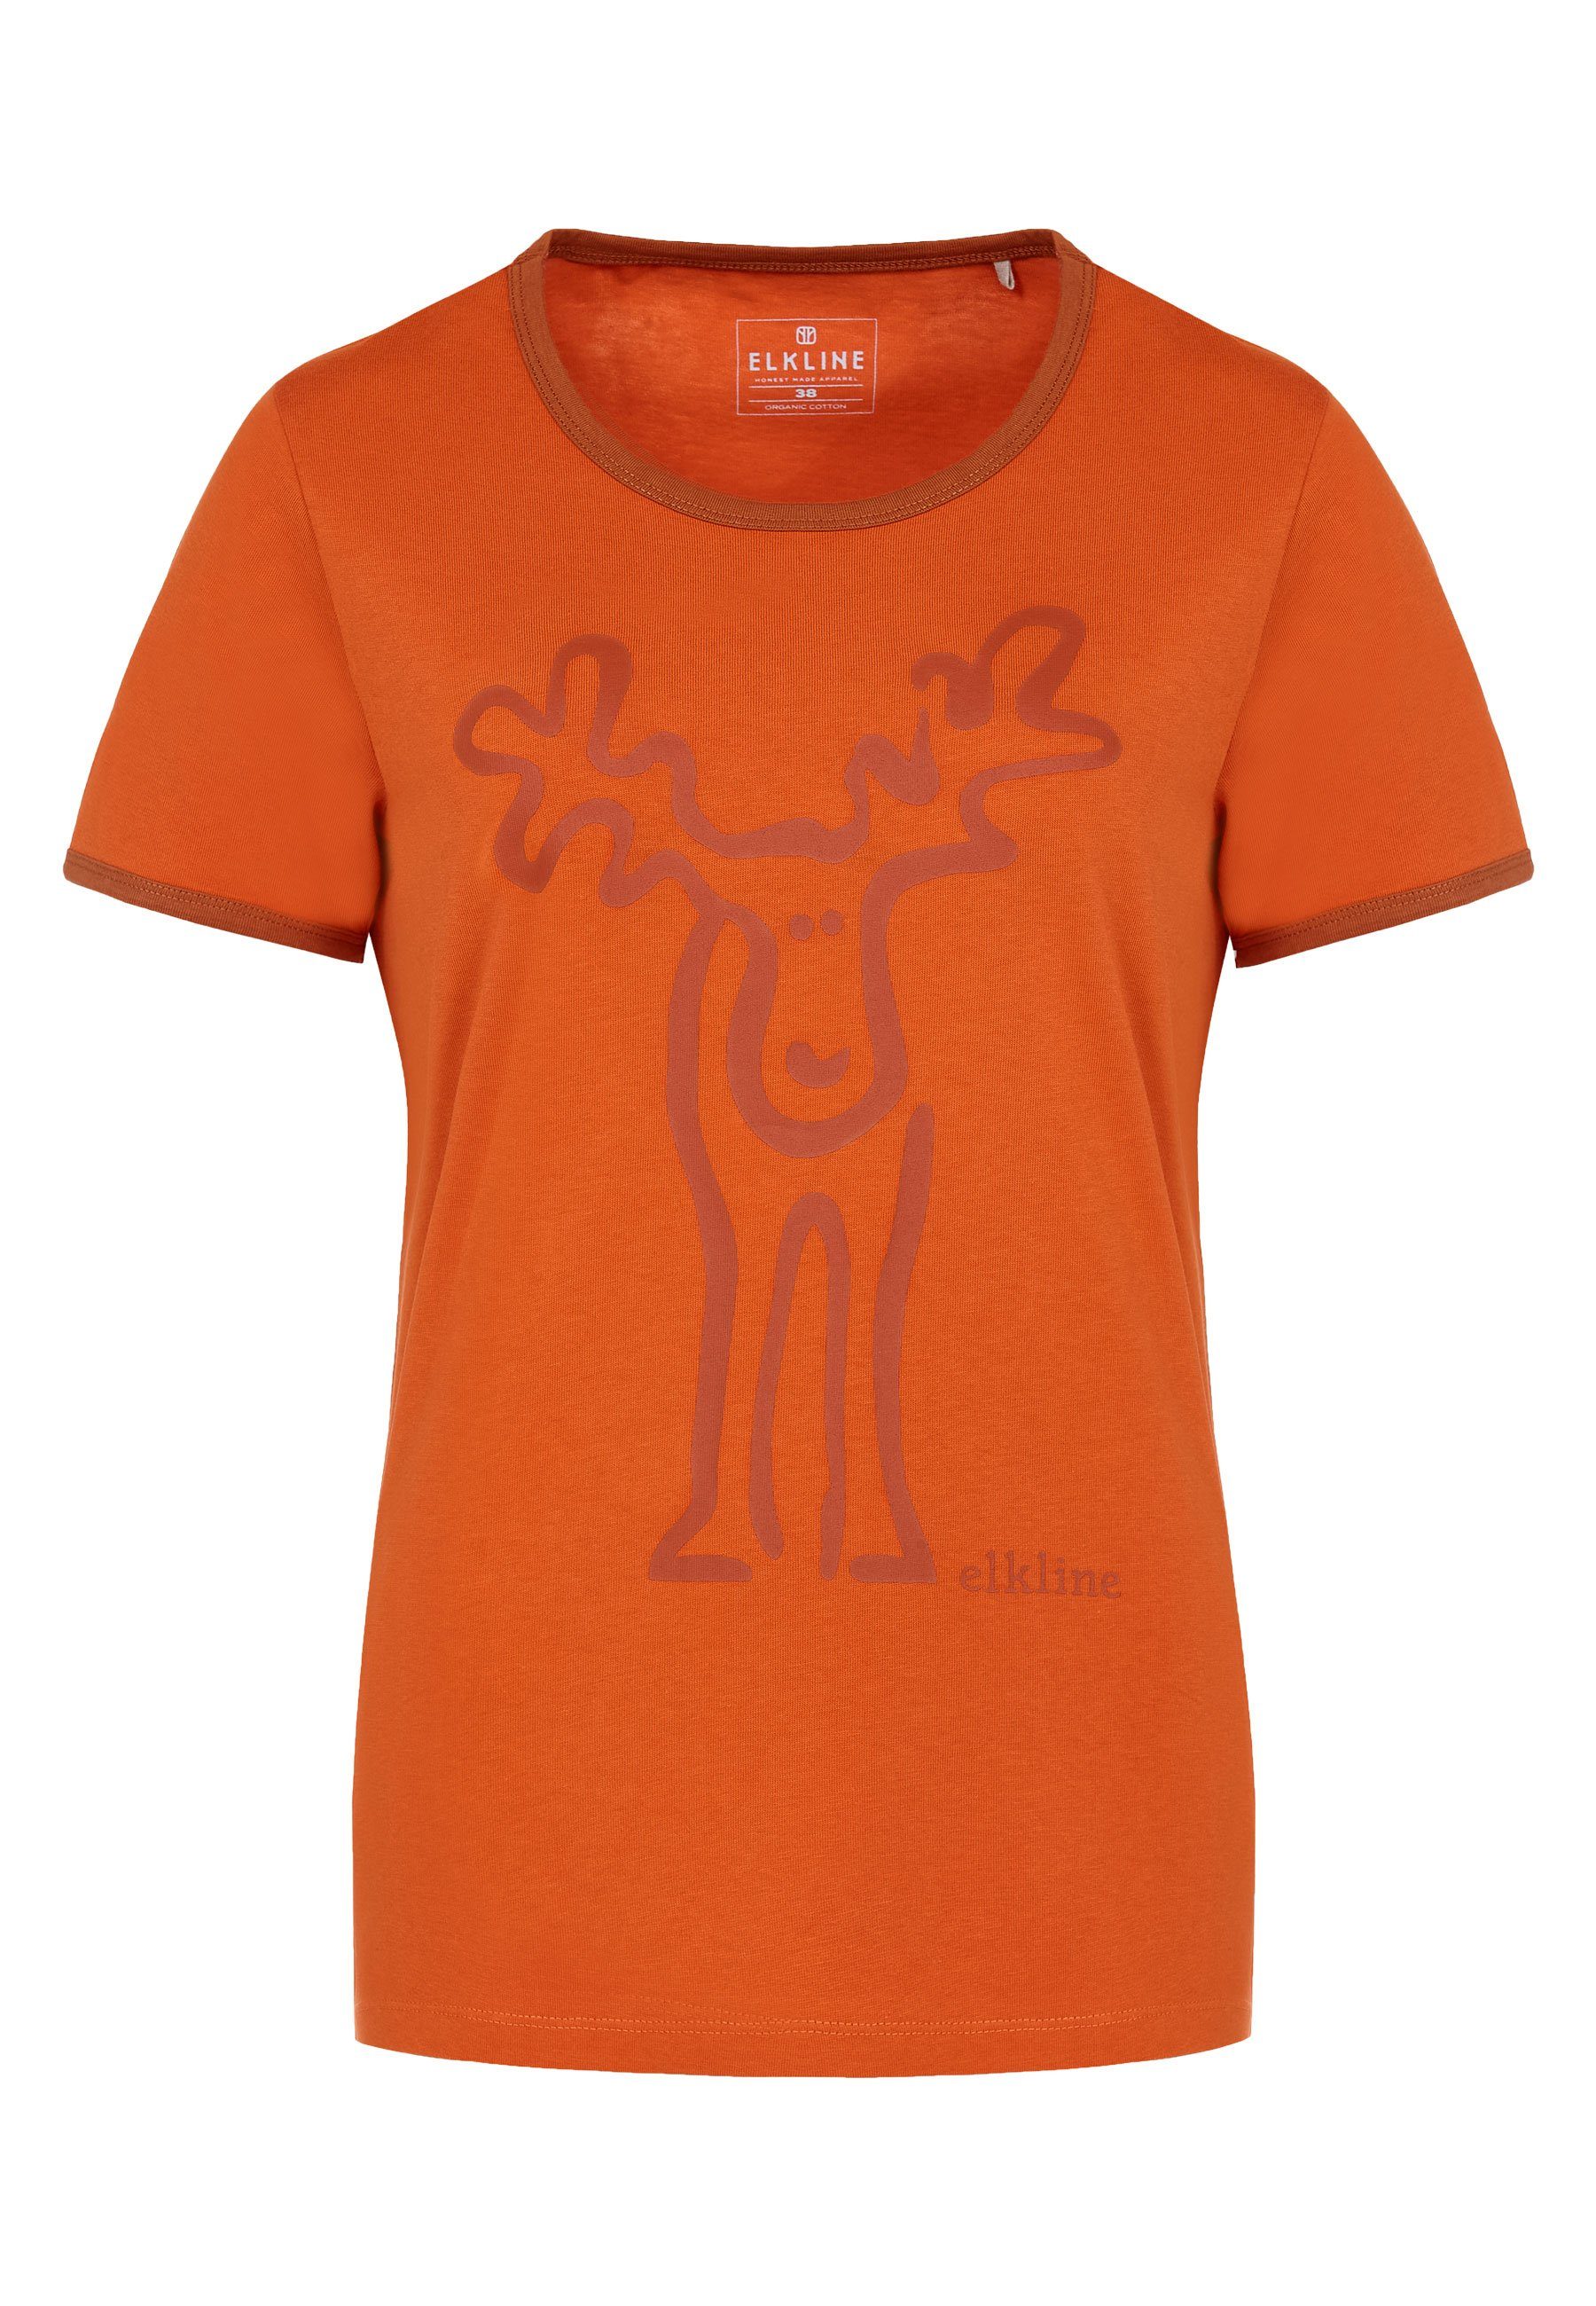 - T-Shirt Rücken Retro Rudolfine Brust Elch darkorange und Elkline orange Print rust